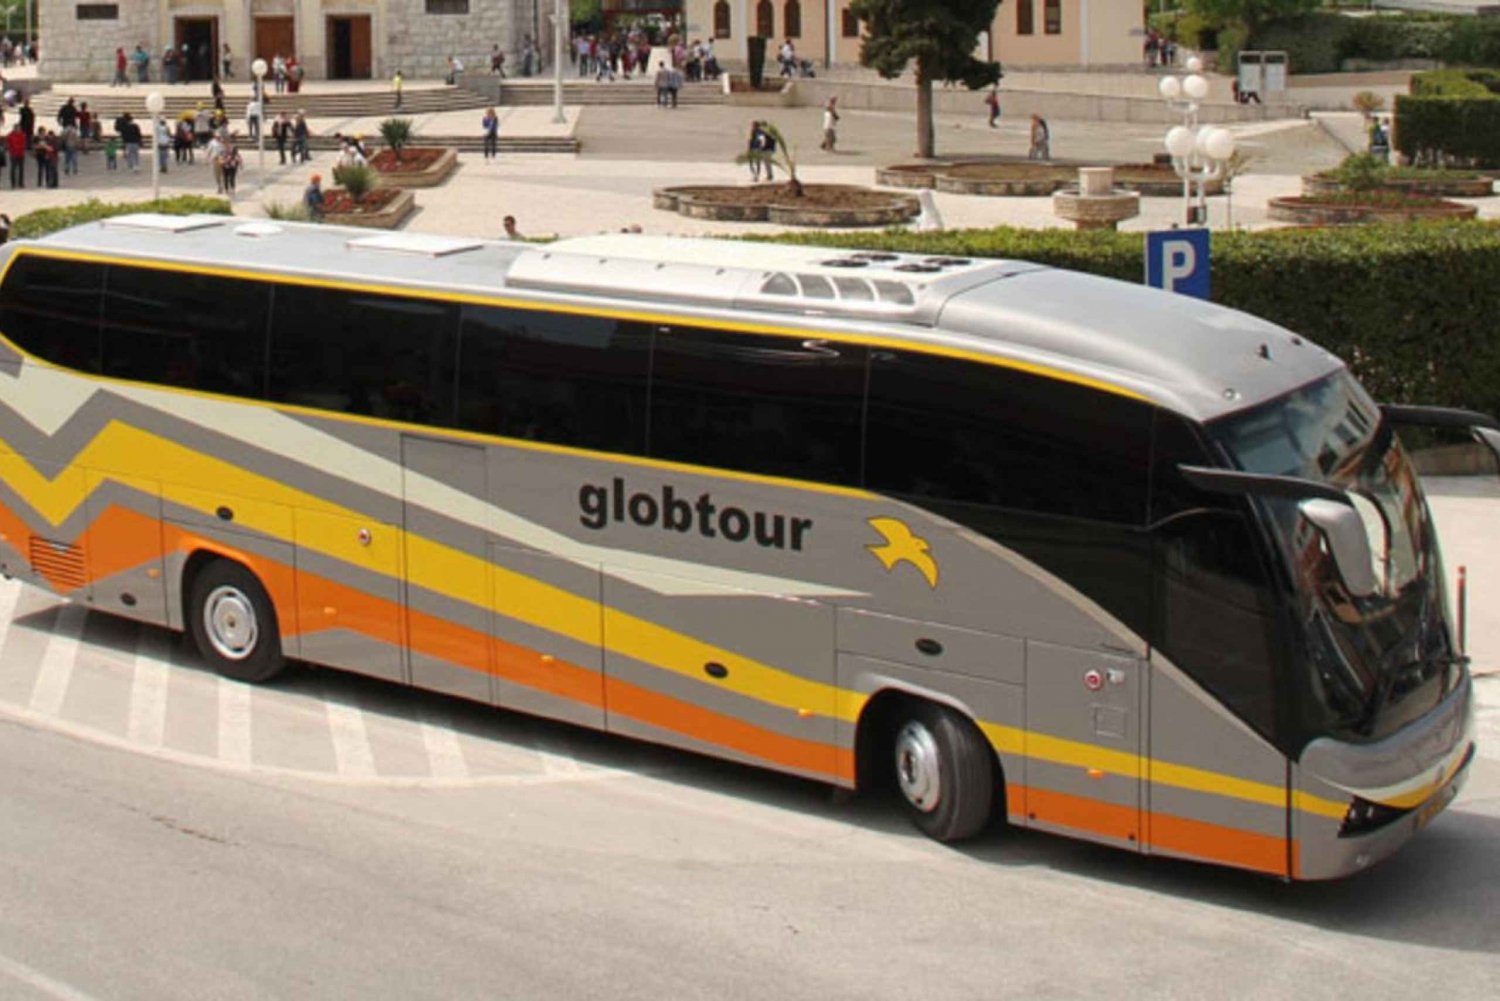 Vá de Kotor para Dubrovnik ou vice-versa em ônibus modernos